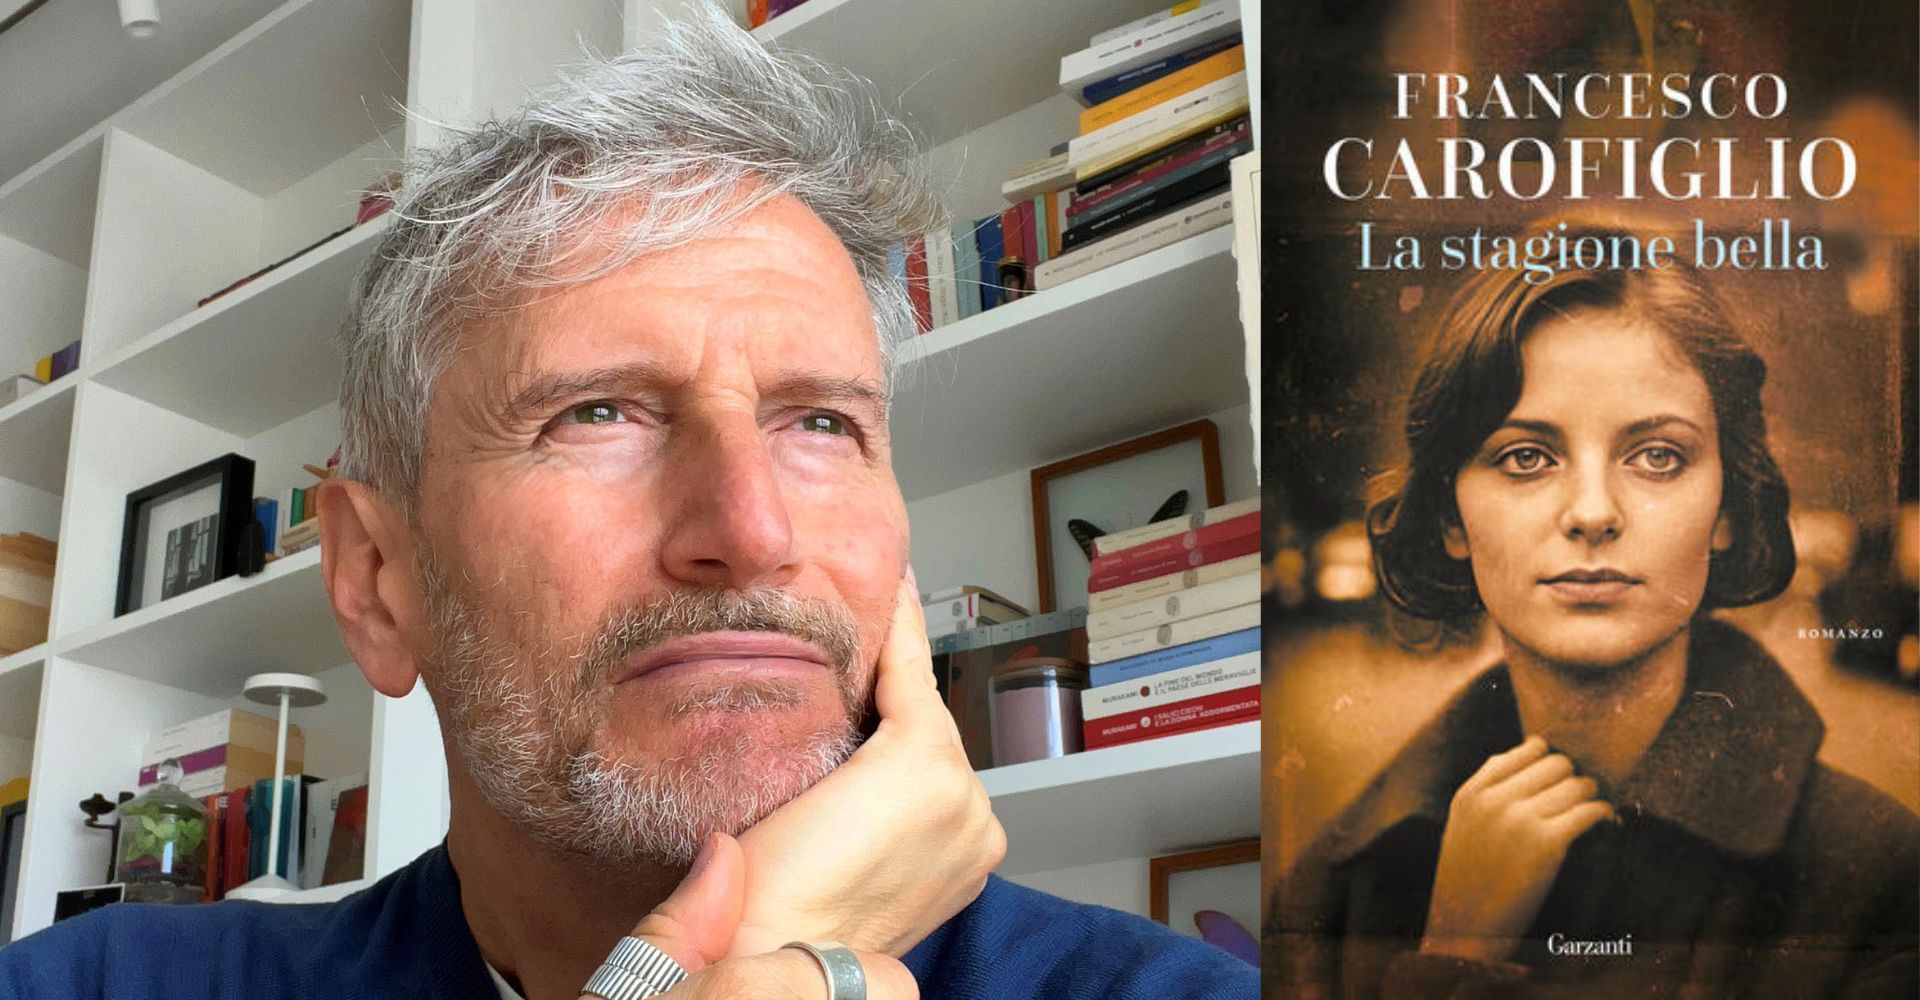 "Mi sono immerso in acque profonde": Francesco Carofiglio racconta "La stagione bella"